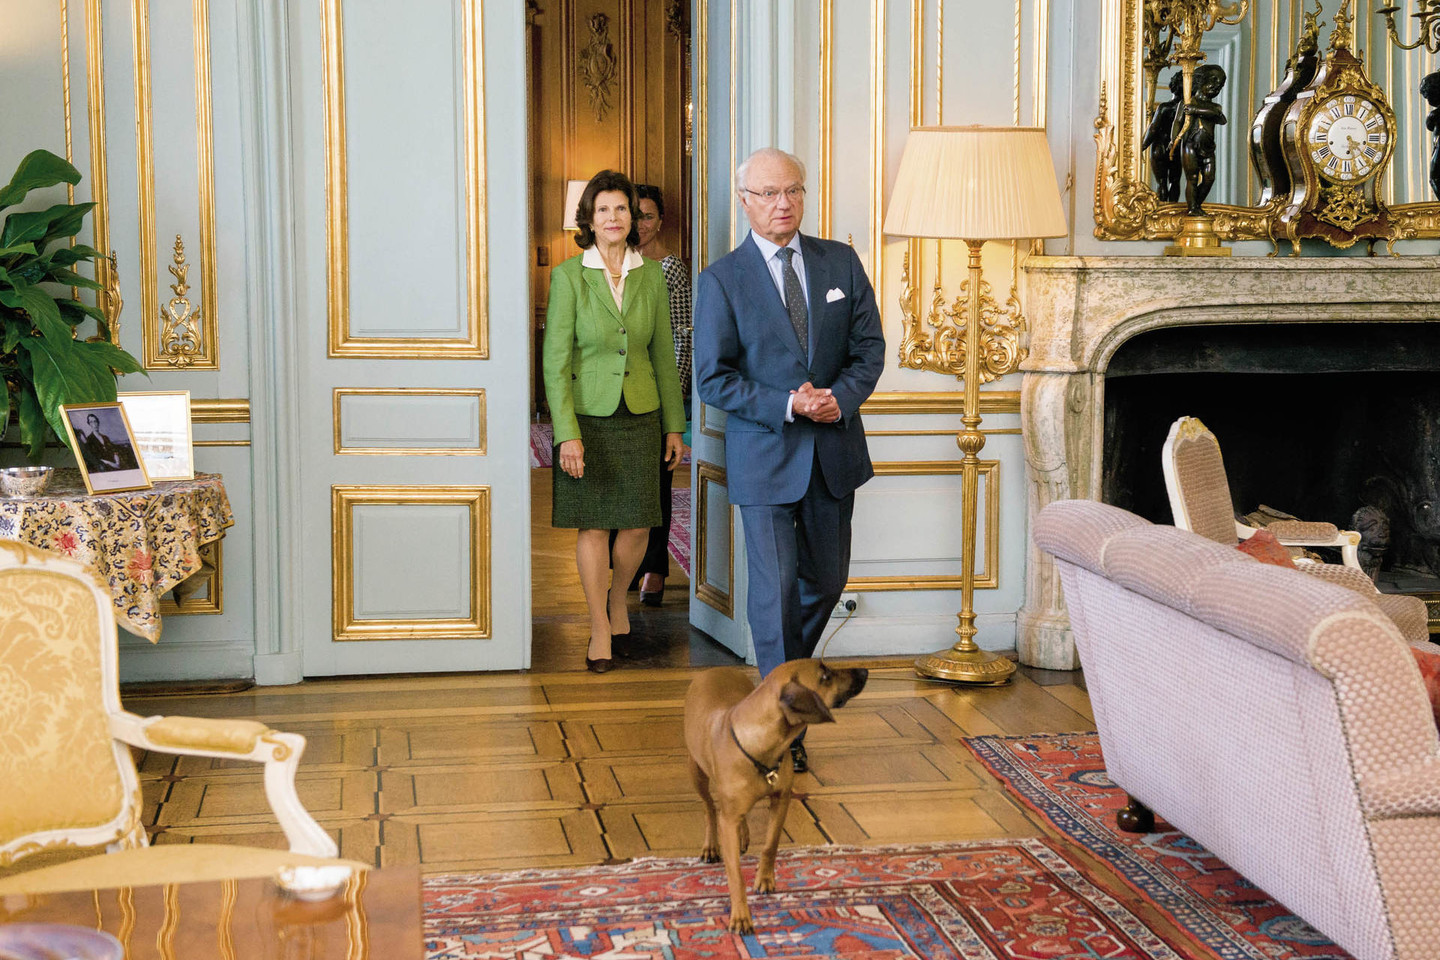 Švedijos karaliaus Carlo XVI Gustafo ir karalienės Silvios šuo Brandy – su savo šeimininkais ir namuose, ir viešumoje.<br>J.Stacevičiaus nuotr.